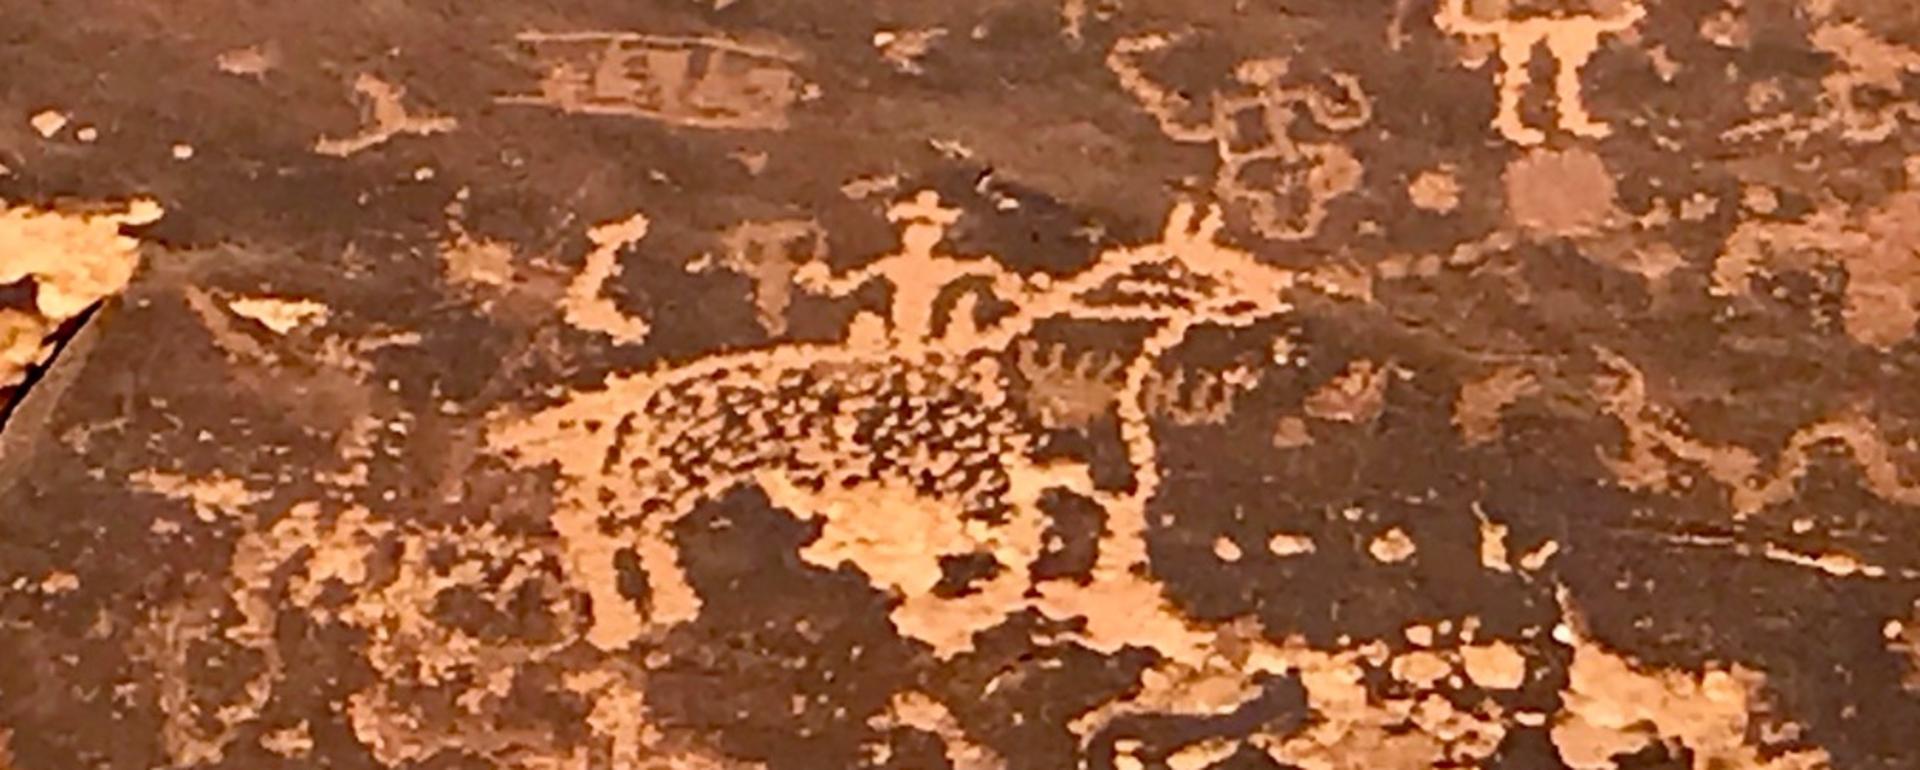 A cowboy petroglyph written over ancient art predating it